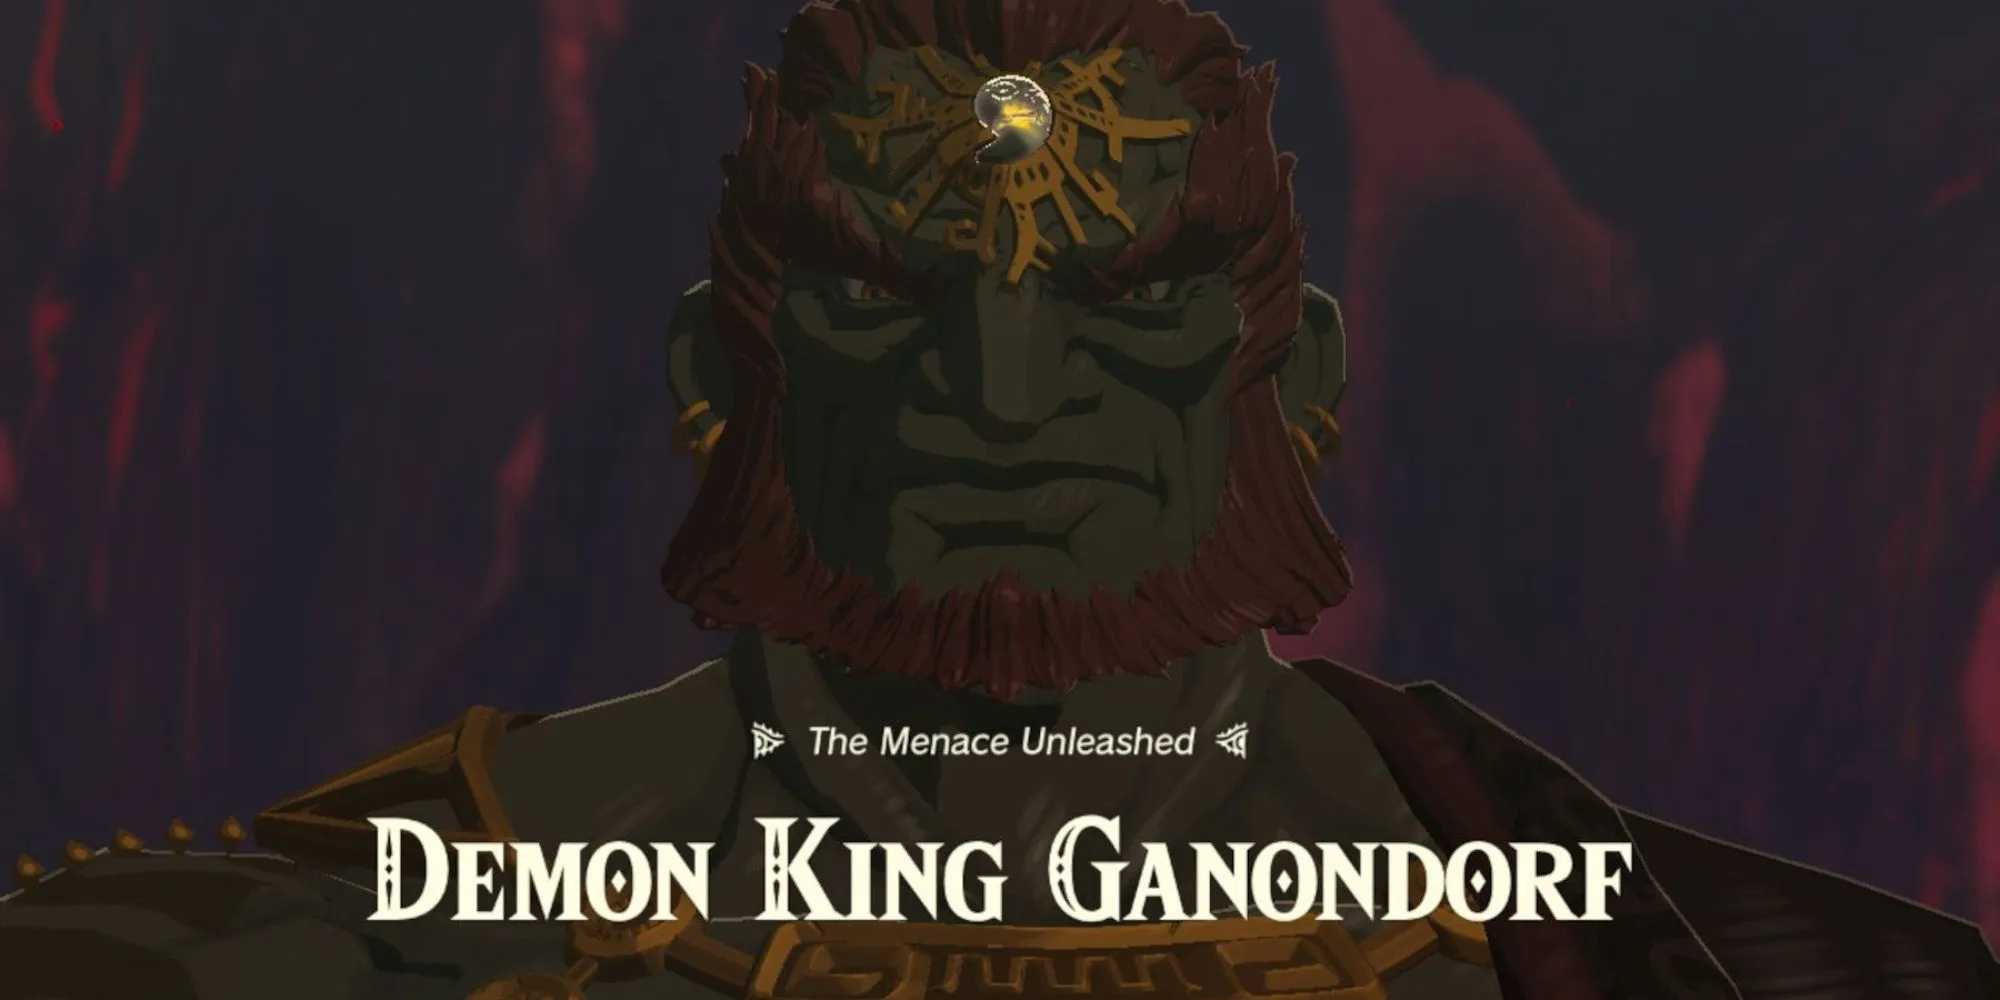 loz totk ganondorf demon king